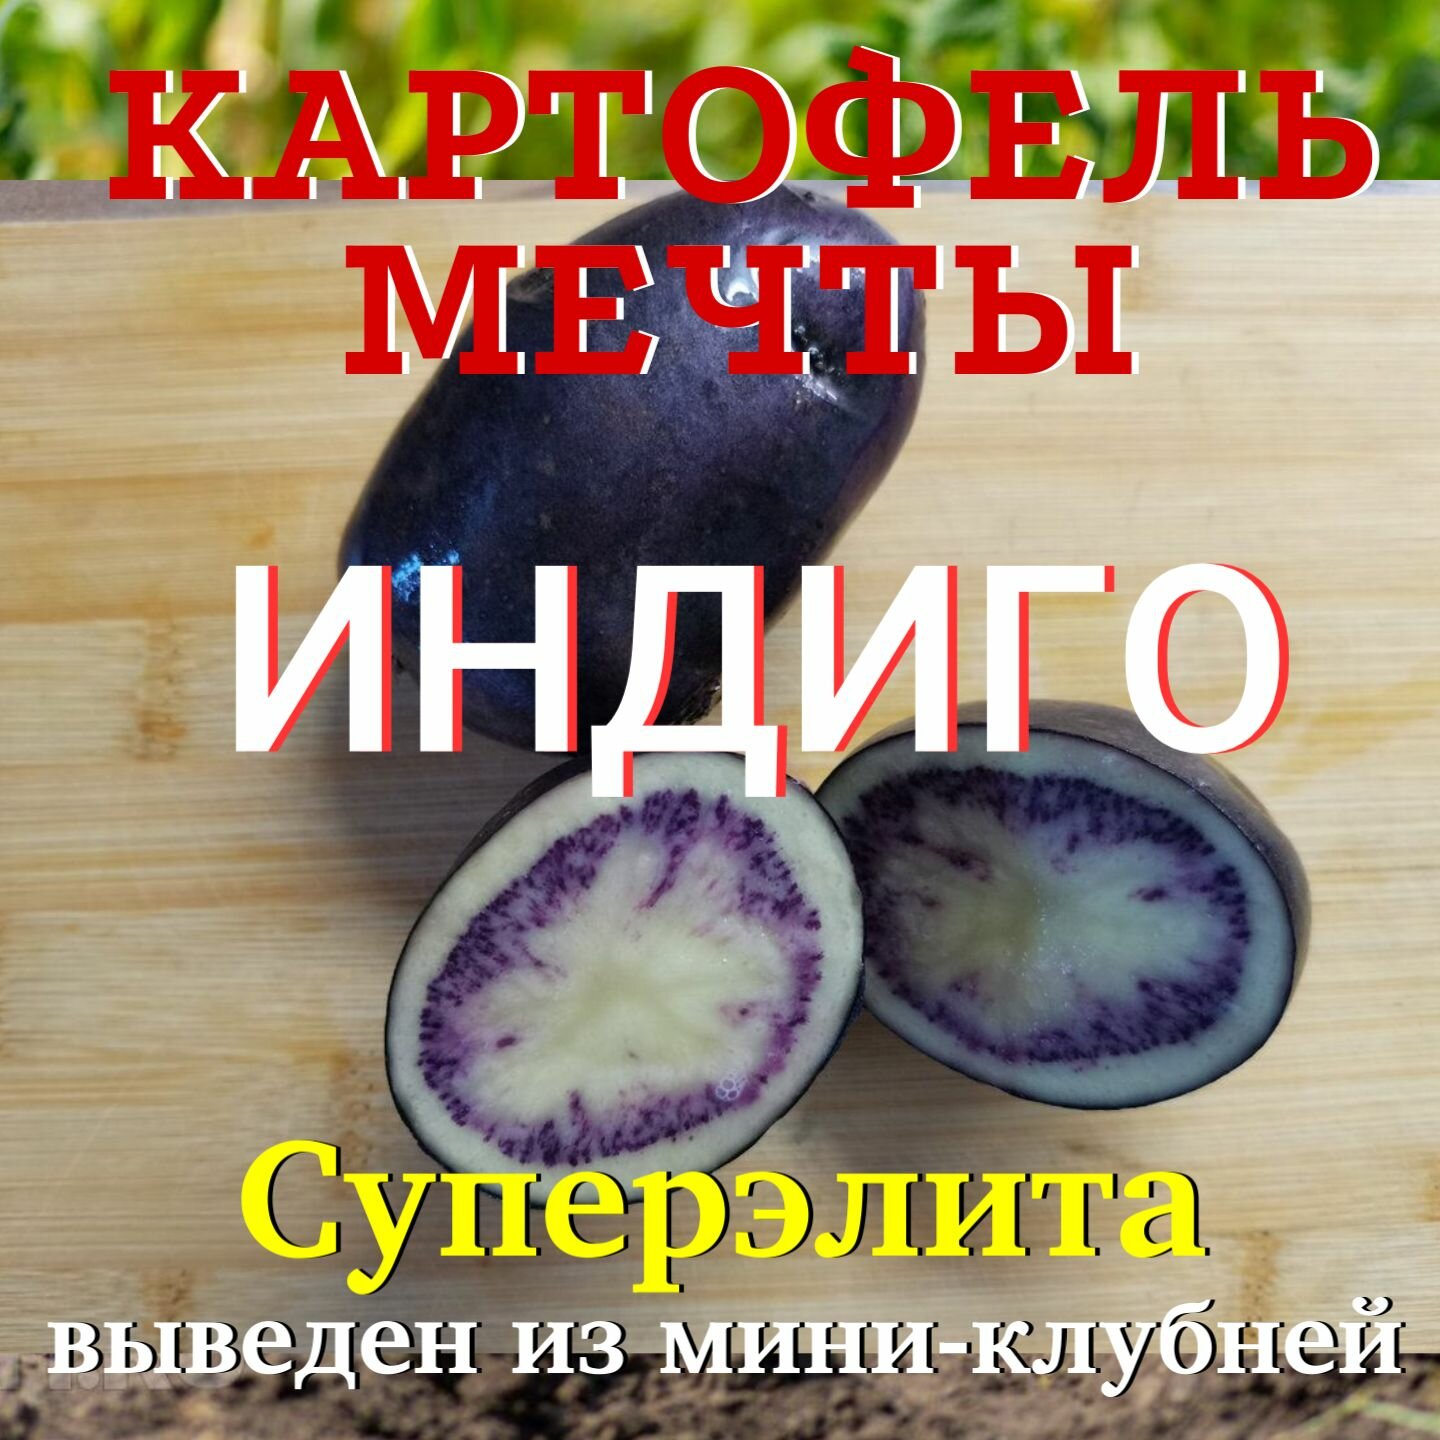 Картофель семенной индиго клубни суперэлита 1 кг